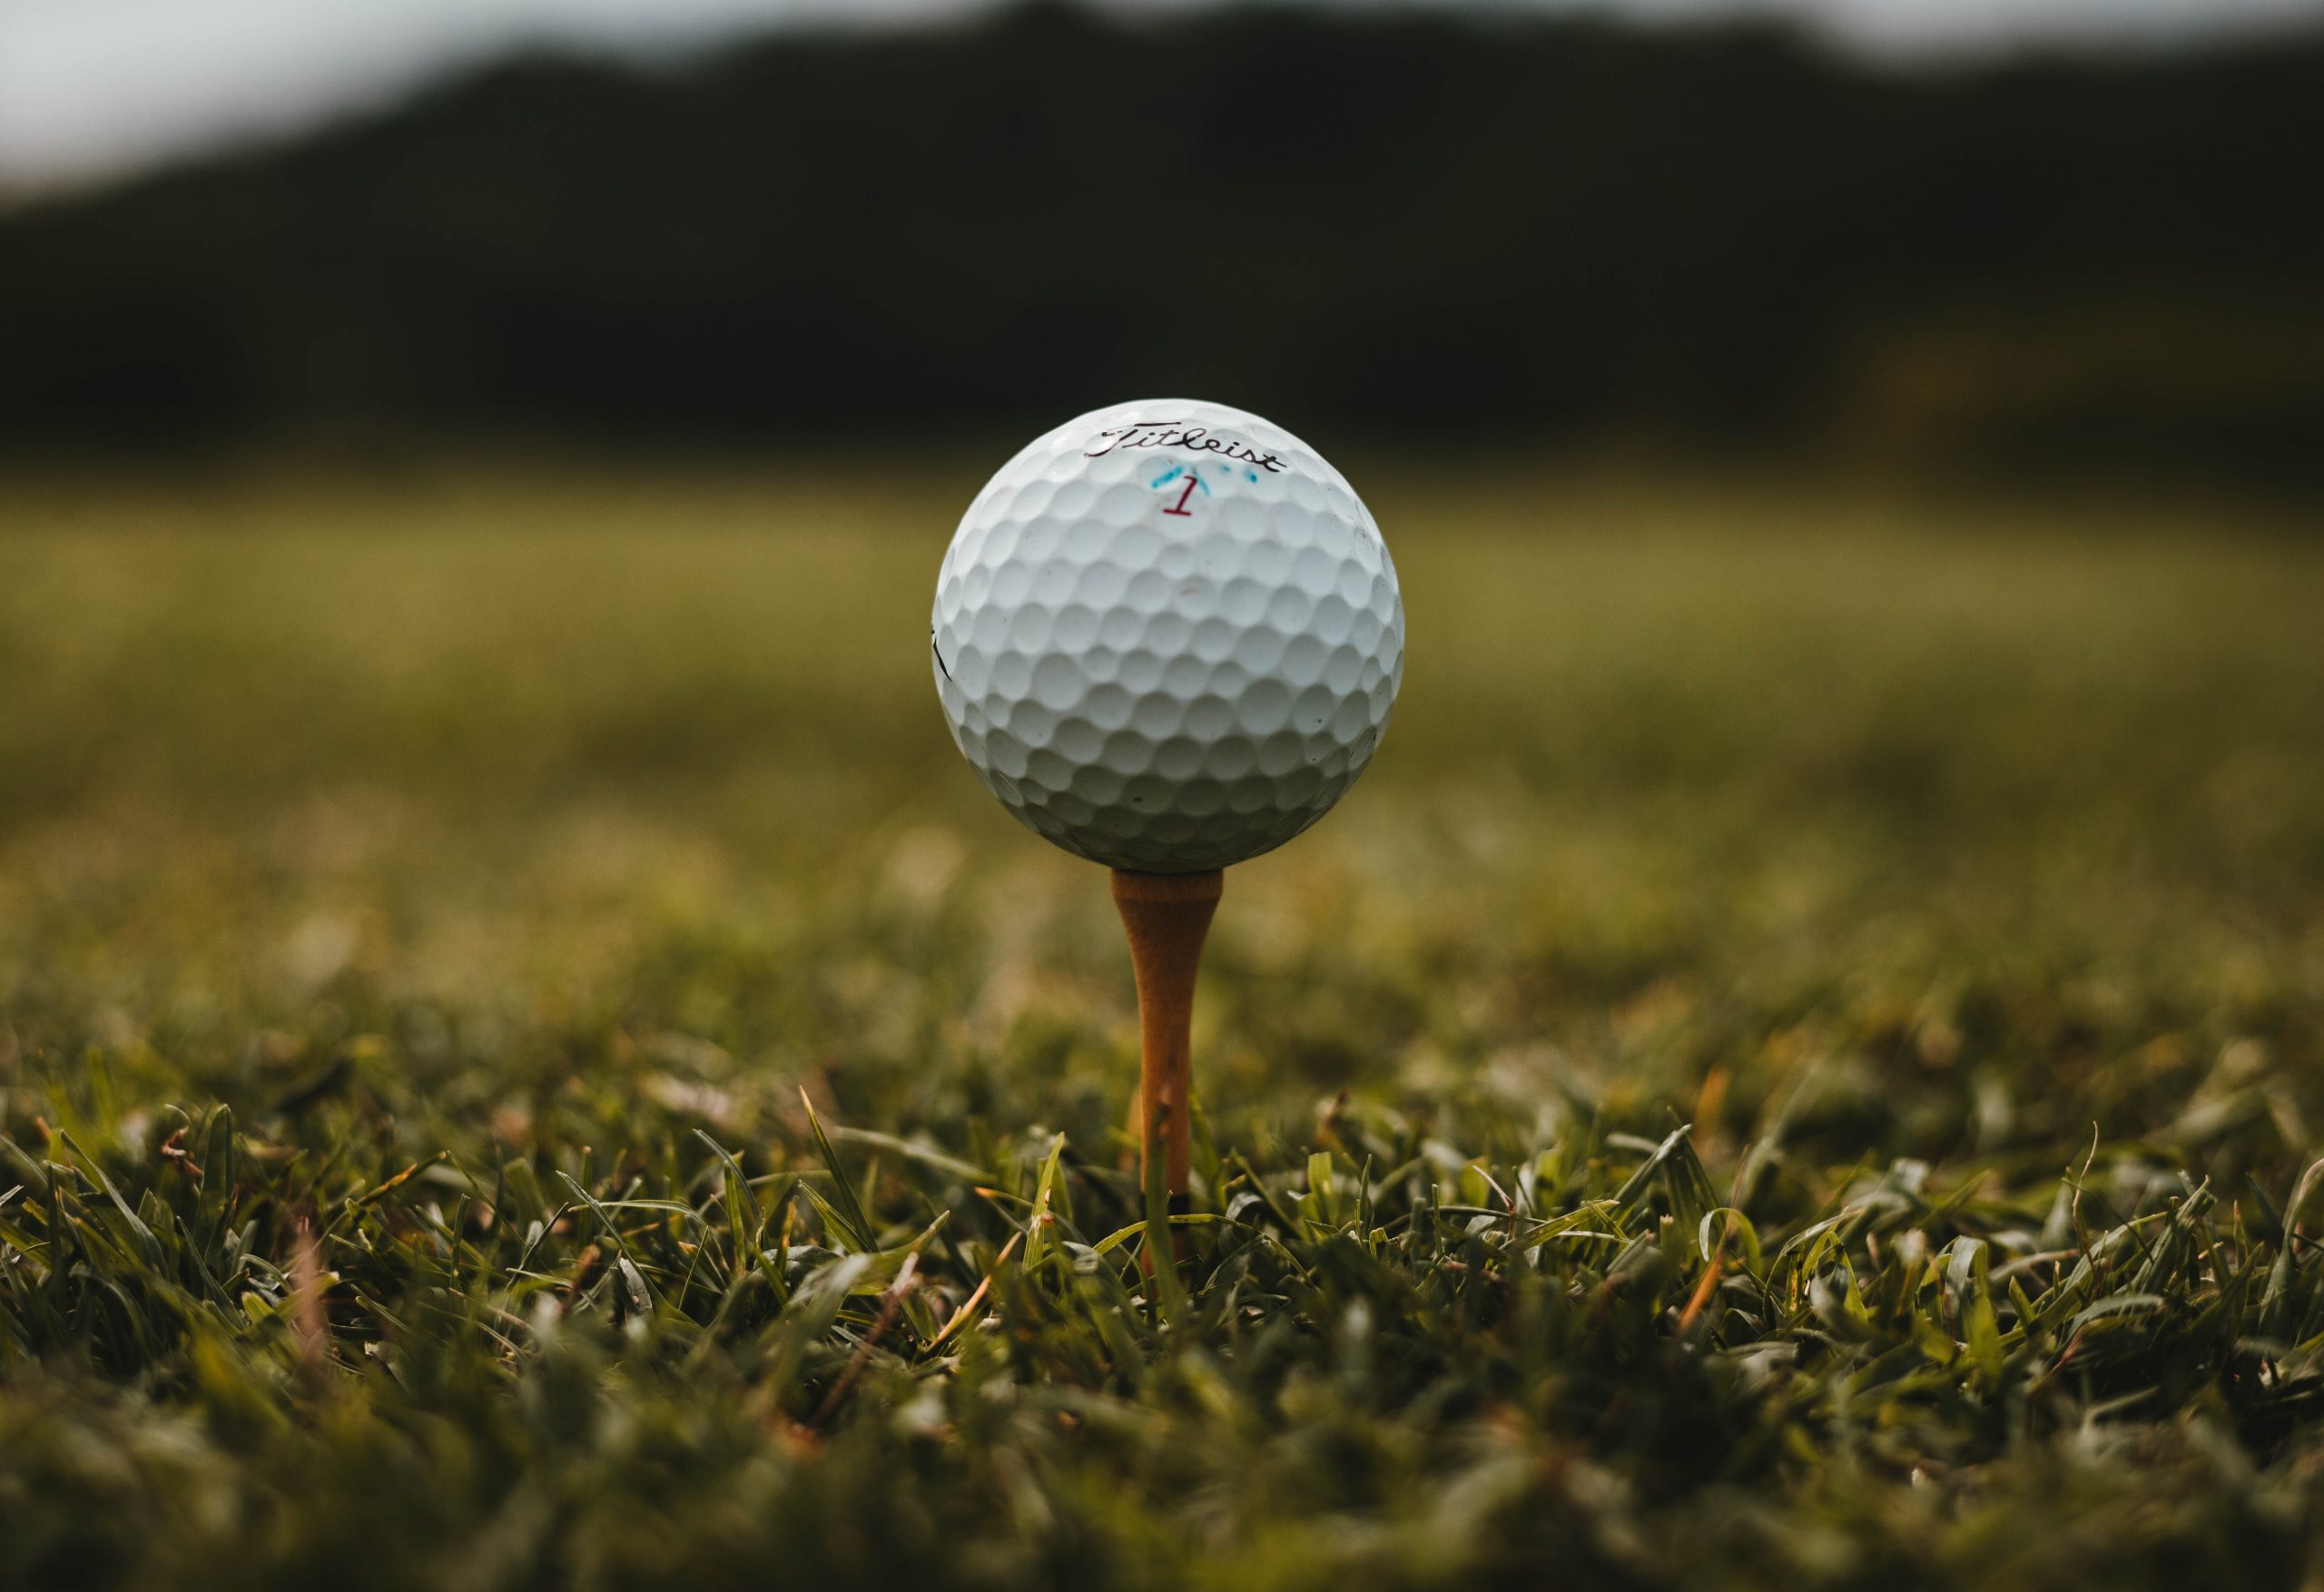 Top 5 Best Golf Ball Gifts